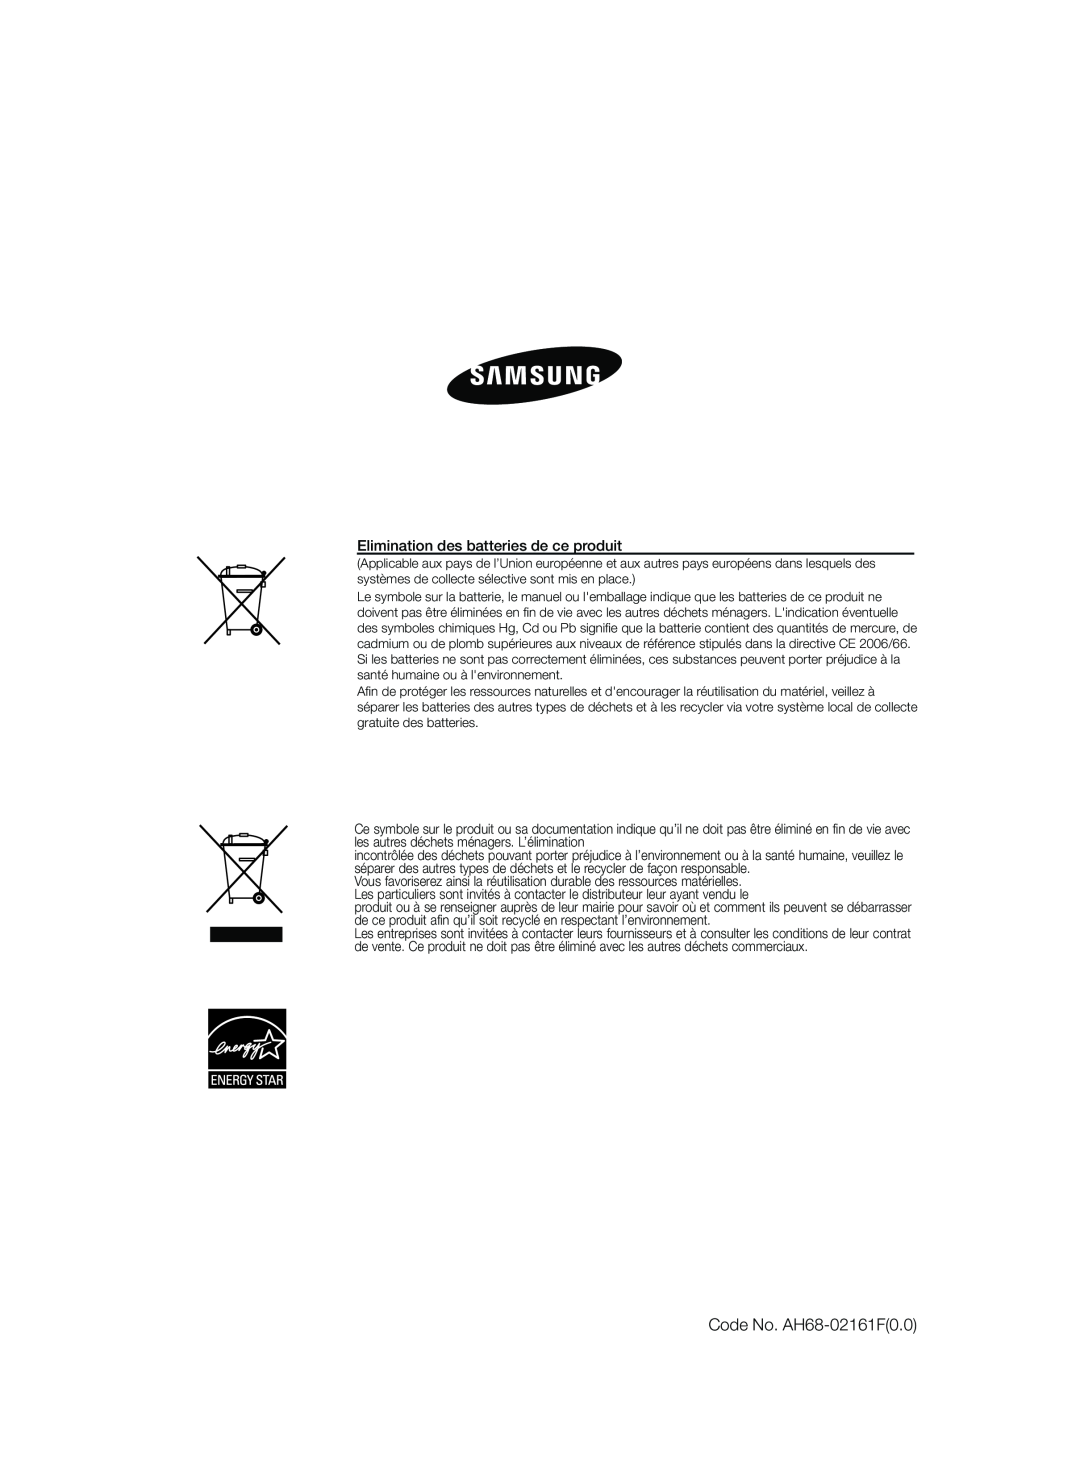 Samsung HT-Z220R/XEF, HT-TZ225R/XEF, HT-TZ222R/XEF manual Code No. AH68-02161F0.0, Elimination des batteries de ce produit 